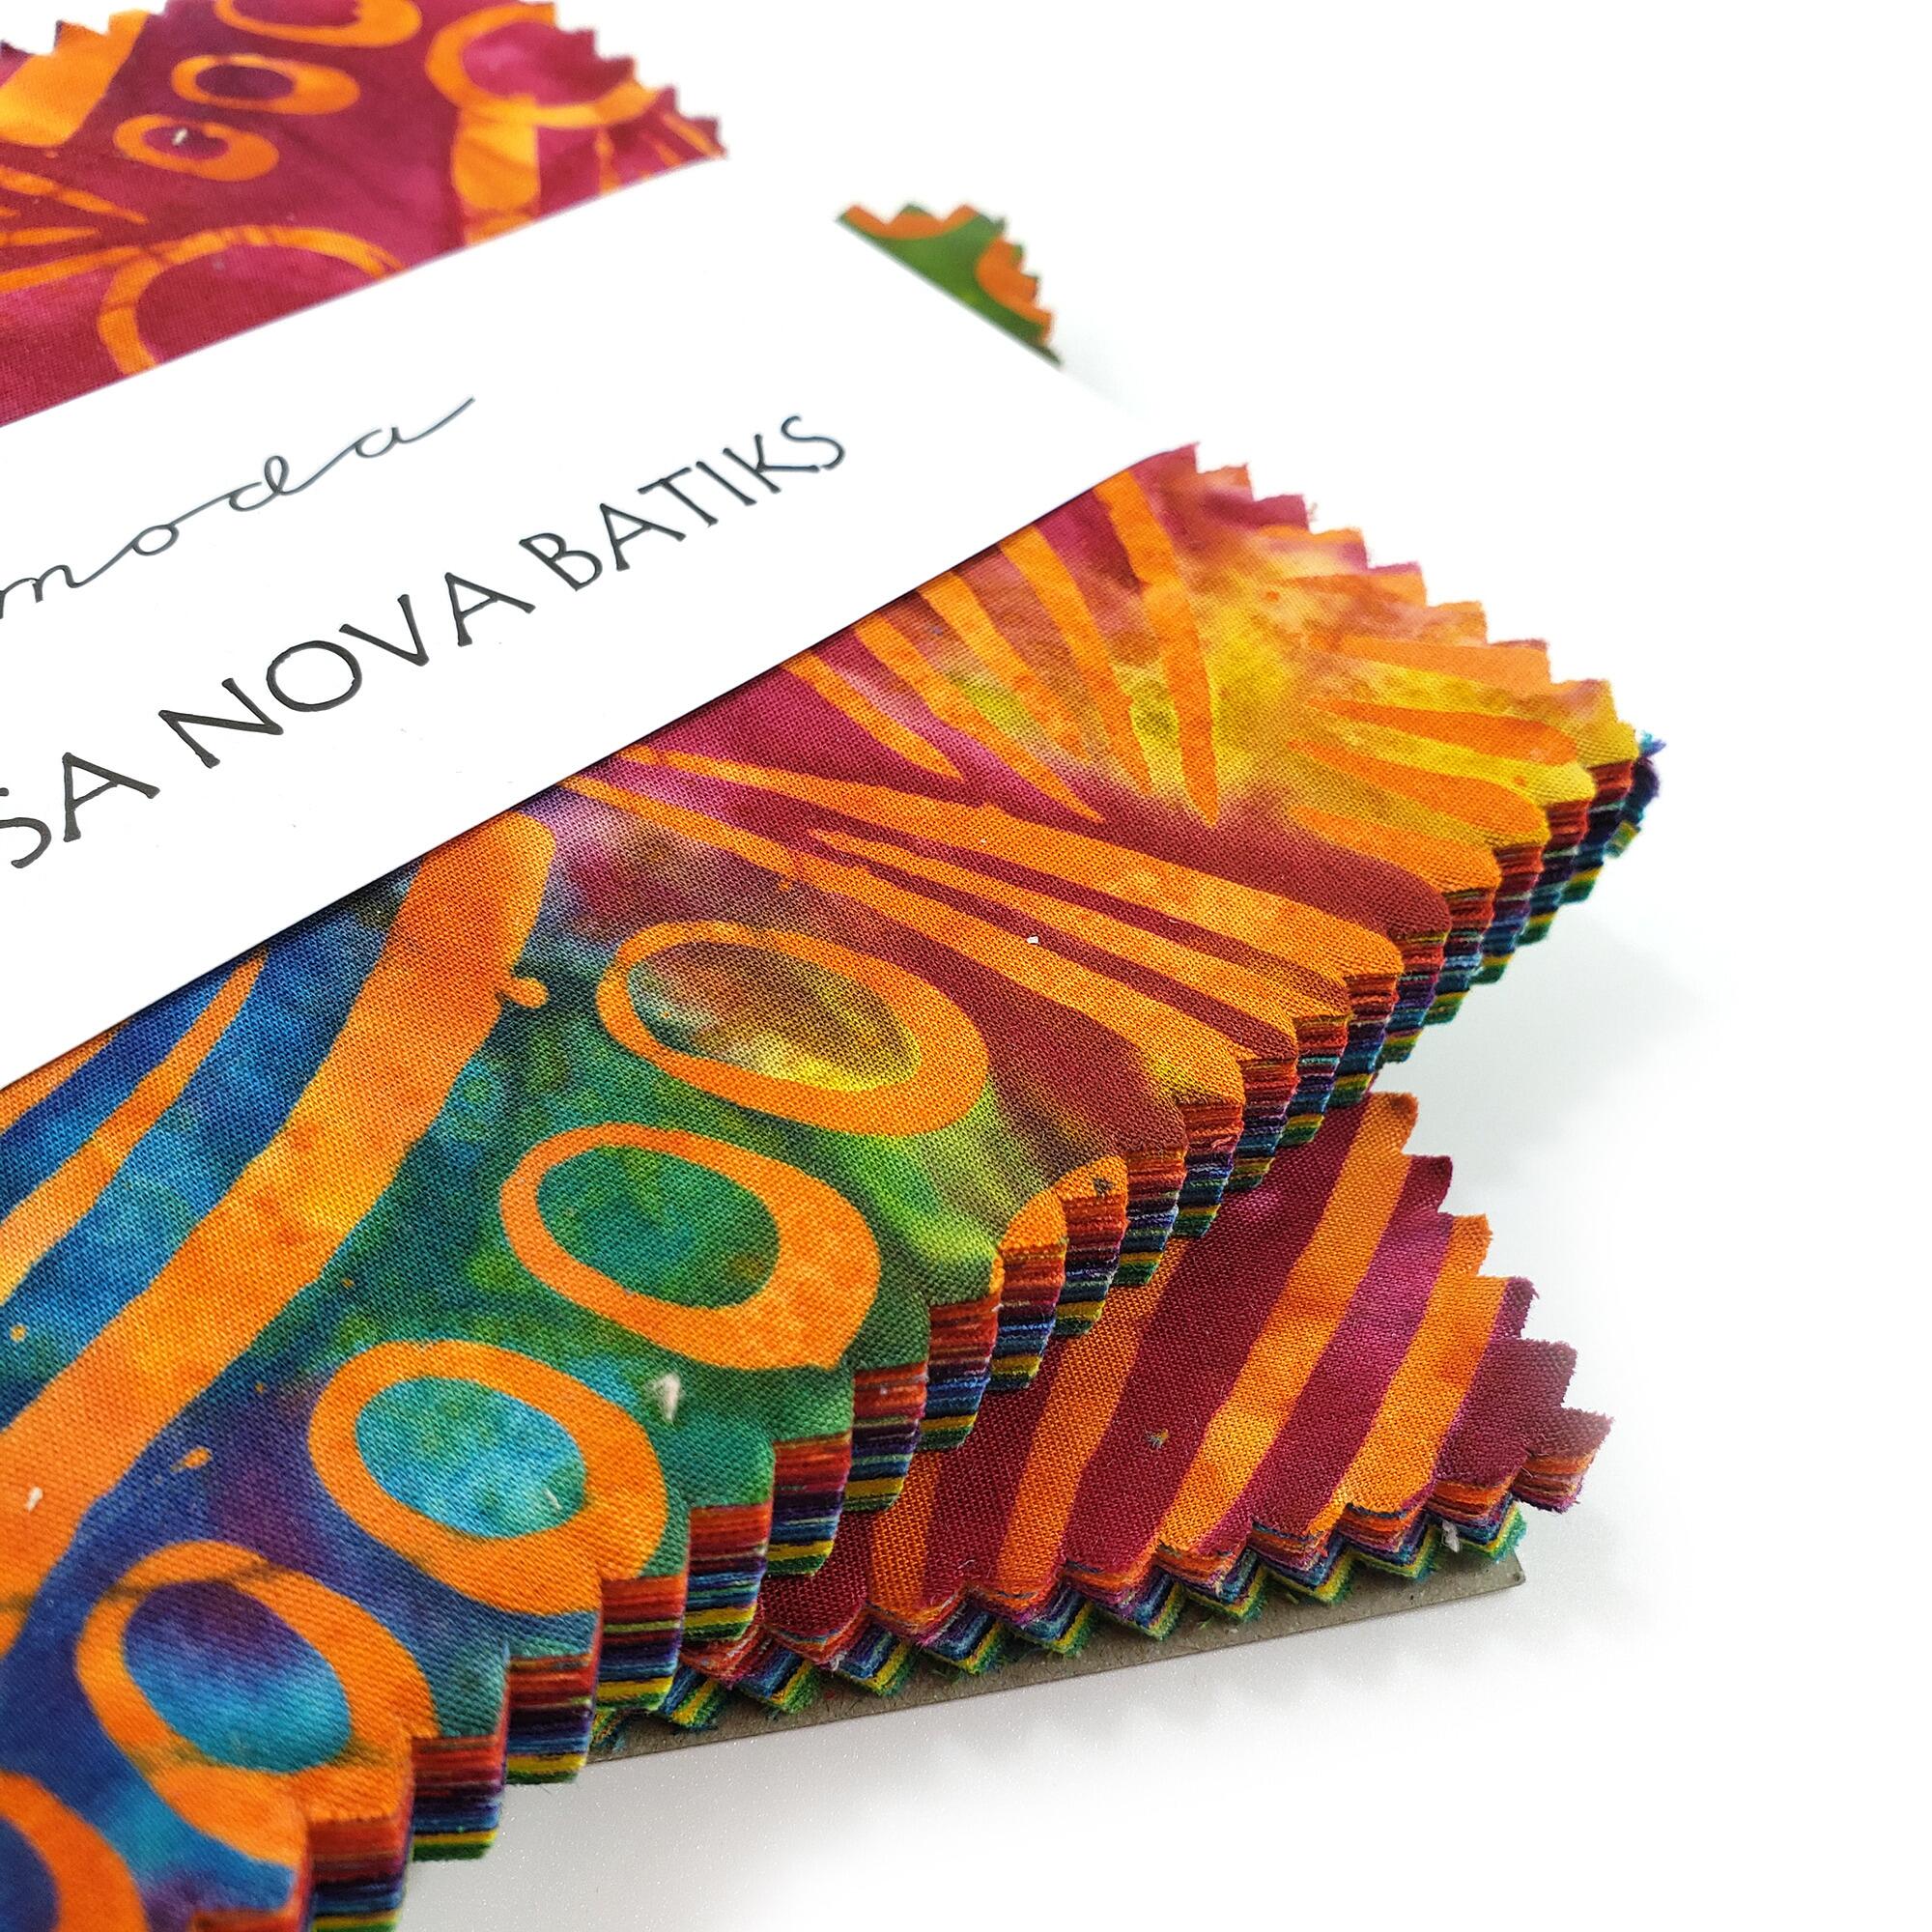 Moda bossa nova, batik cotton squares, batik squares, stars within quilt, jordan fabrics, orange, blue,green,yellow, charm pack